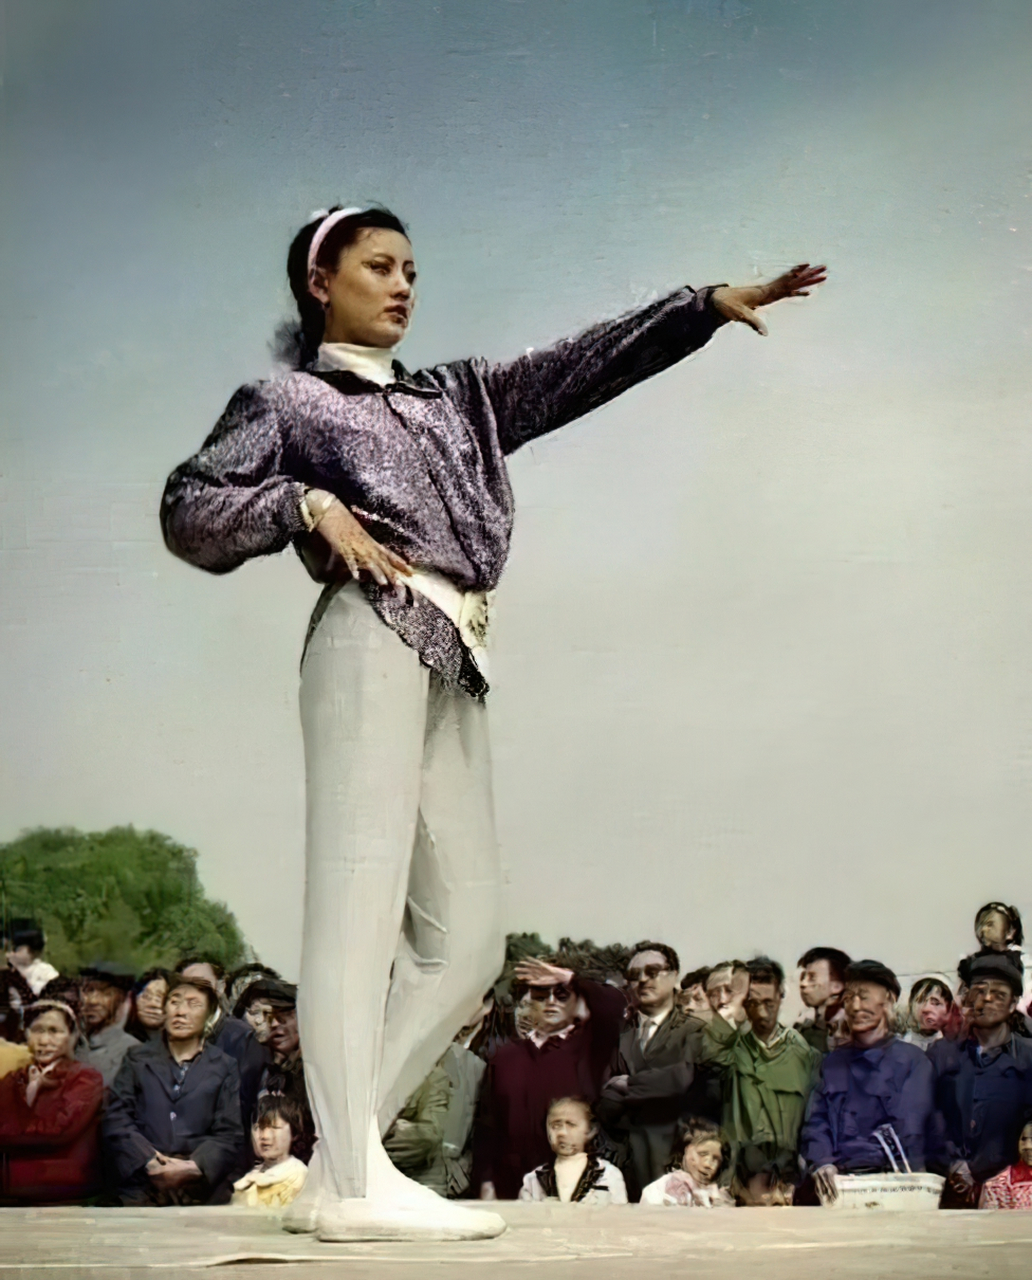 健美裤的流行不仅仅是一场产品狂欢,更代表了当时中国女性审美意识